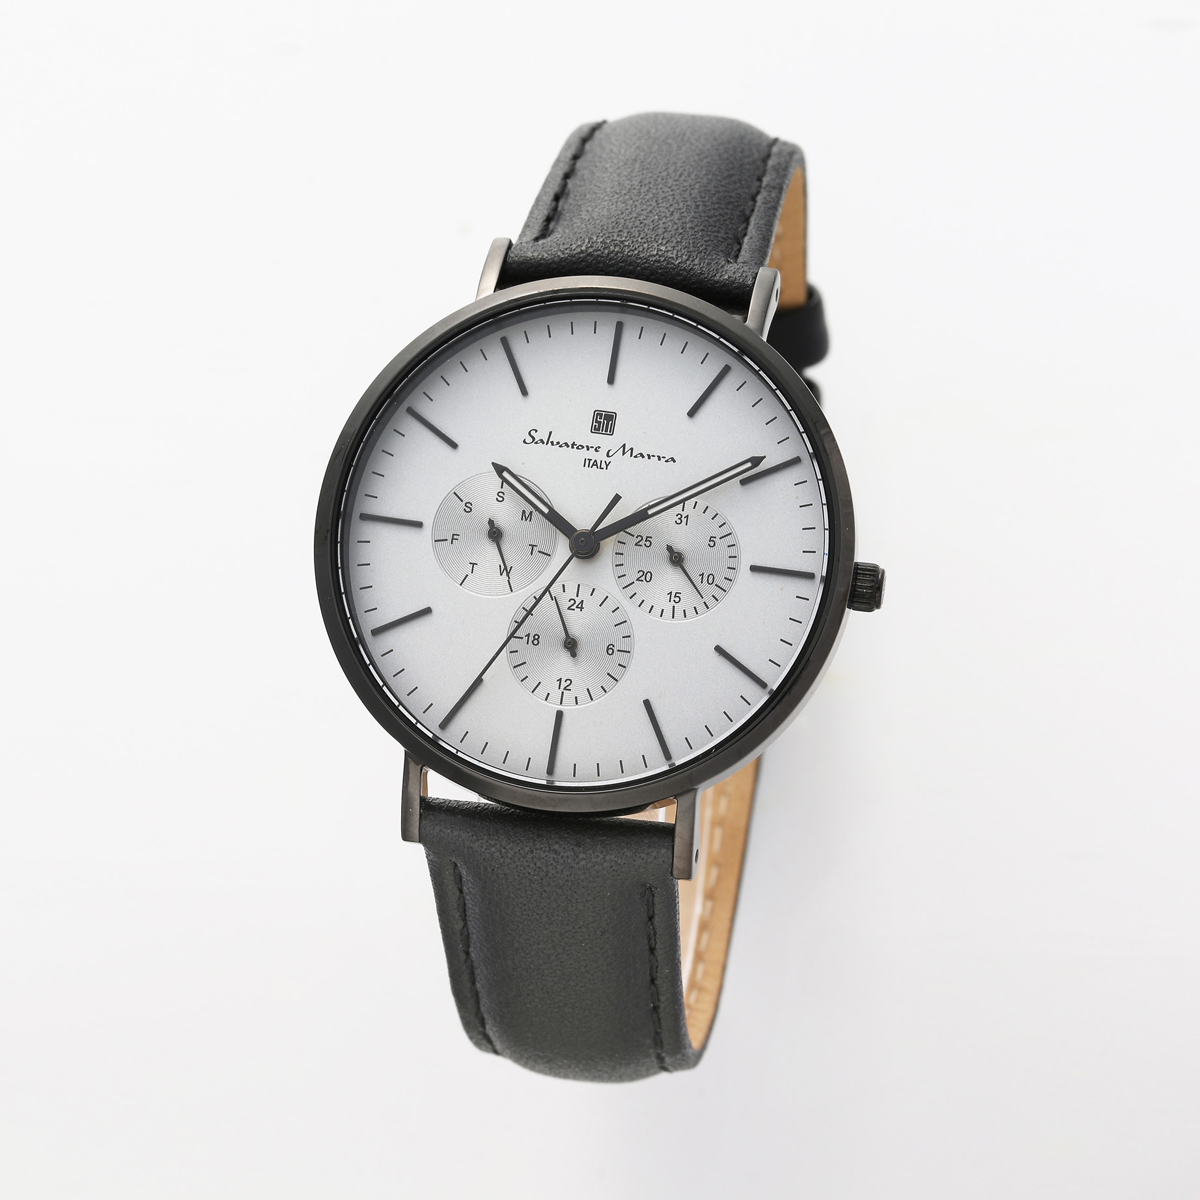 サルバトーレマーラ Salavatore Marra 腕時計 SM22102-BKGY クオーツ 腕時計 メンズ レディース レザーベルト 男女兼用ユニセックス 腕時